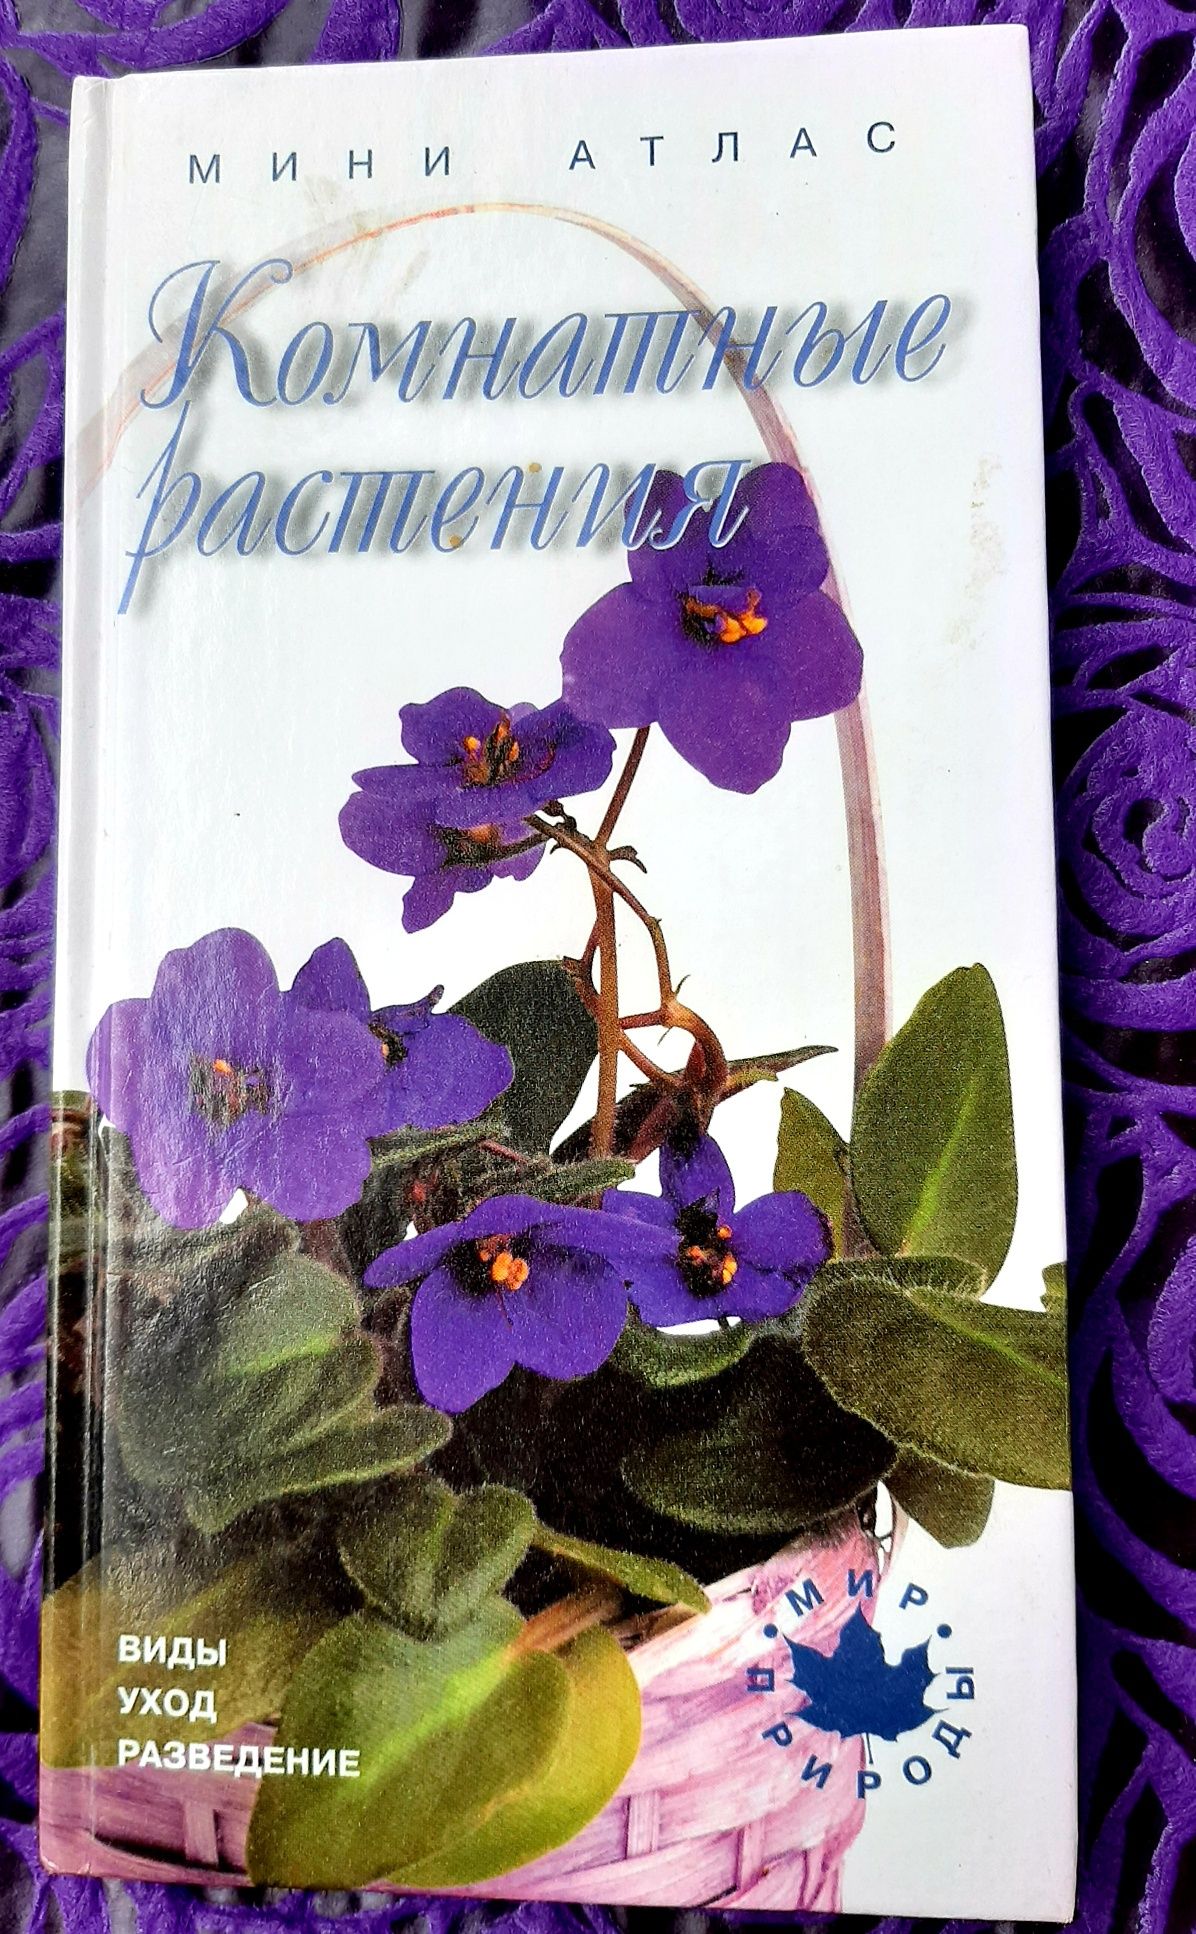 Мини атлас "Комнатные растения" Жаков А.В. 2001, твёрдая обложка